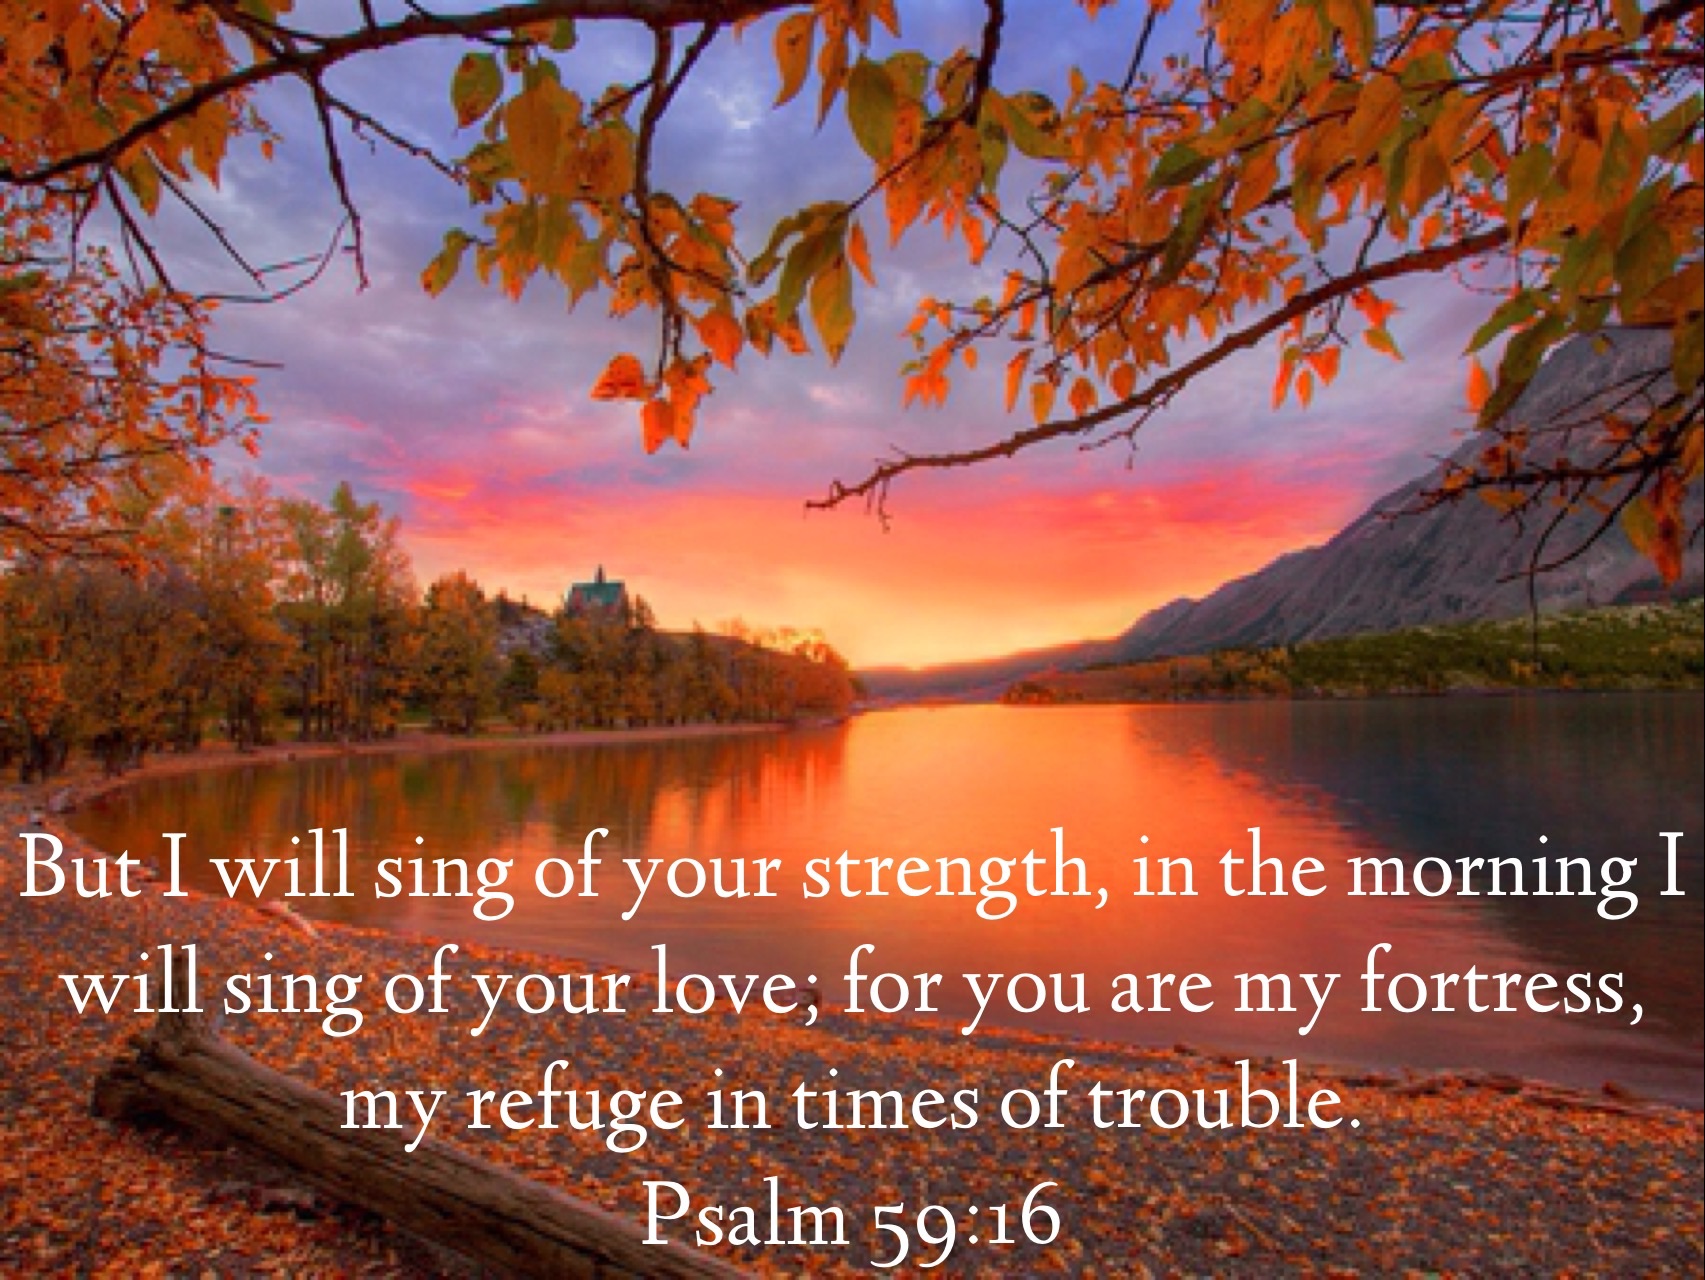 psalms-59-16